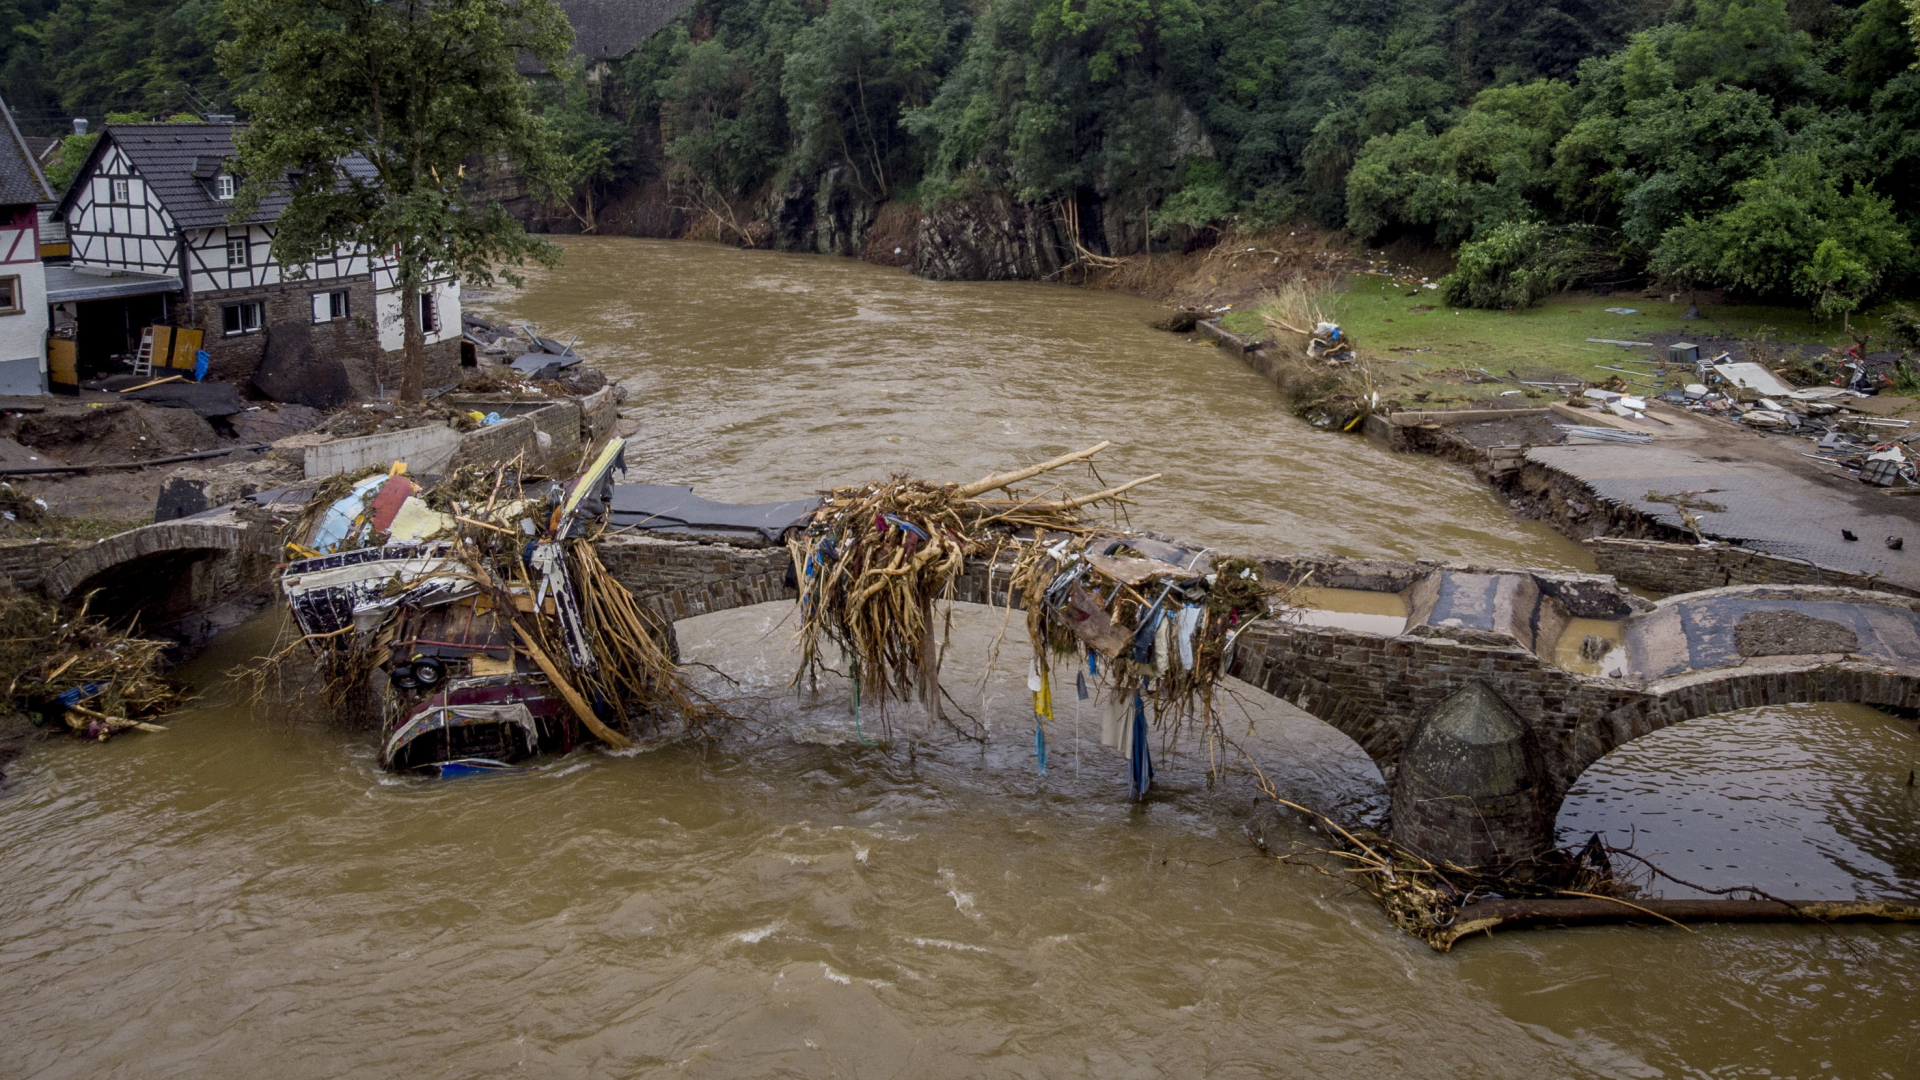 Die zerstörte Brücke in Schuld, aufgenommen zwei Tage nach dem verheerenden Hochwasser vom Juli 2021